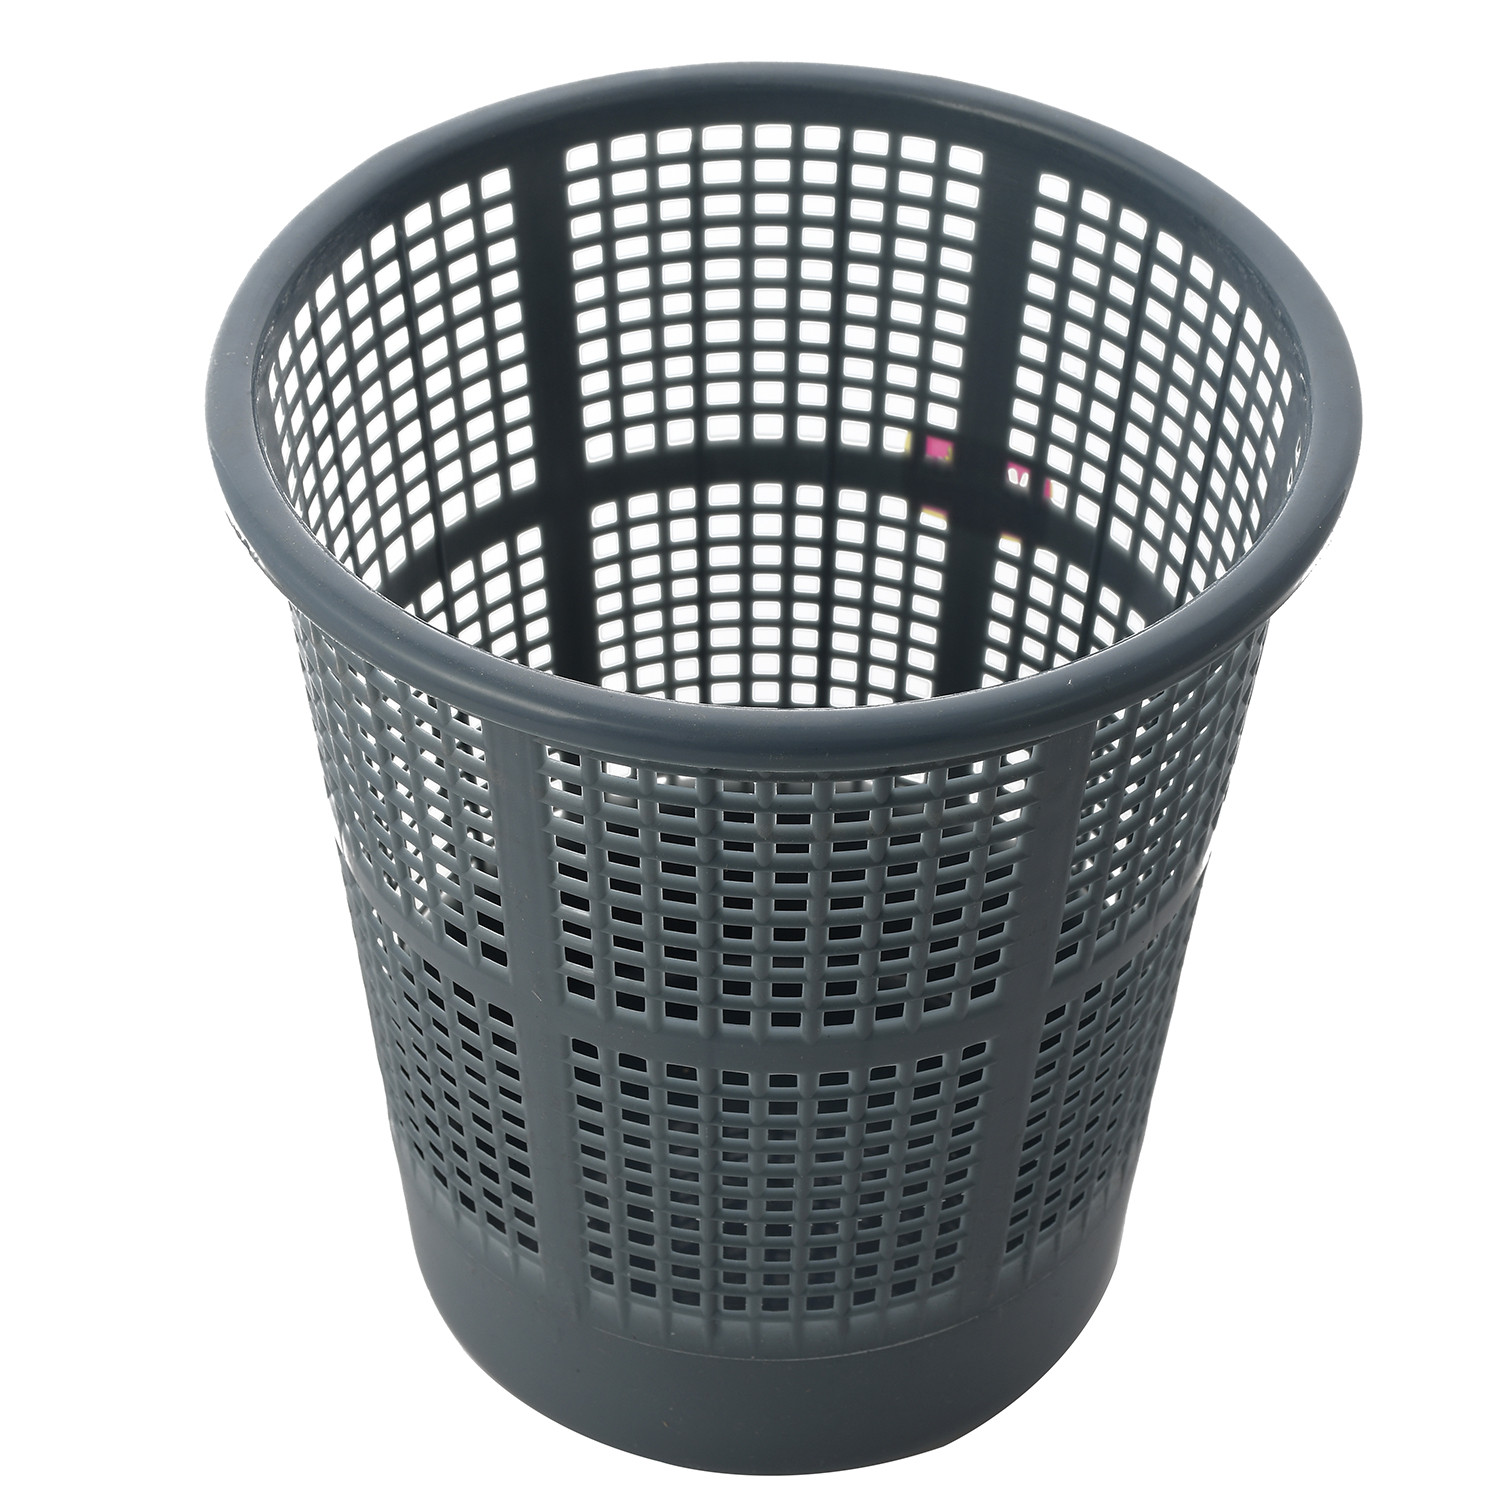 Kuber Industries Plastic Mesh Dustbin Garbage Bin for Office use, School, Bedroom,Kids Room, Home, Multi Purpose,5 Liters (Brown & Grey & Red)-KUBMART282